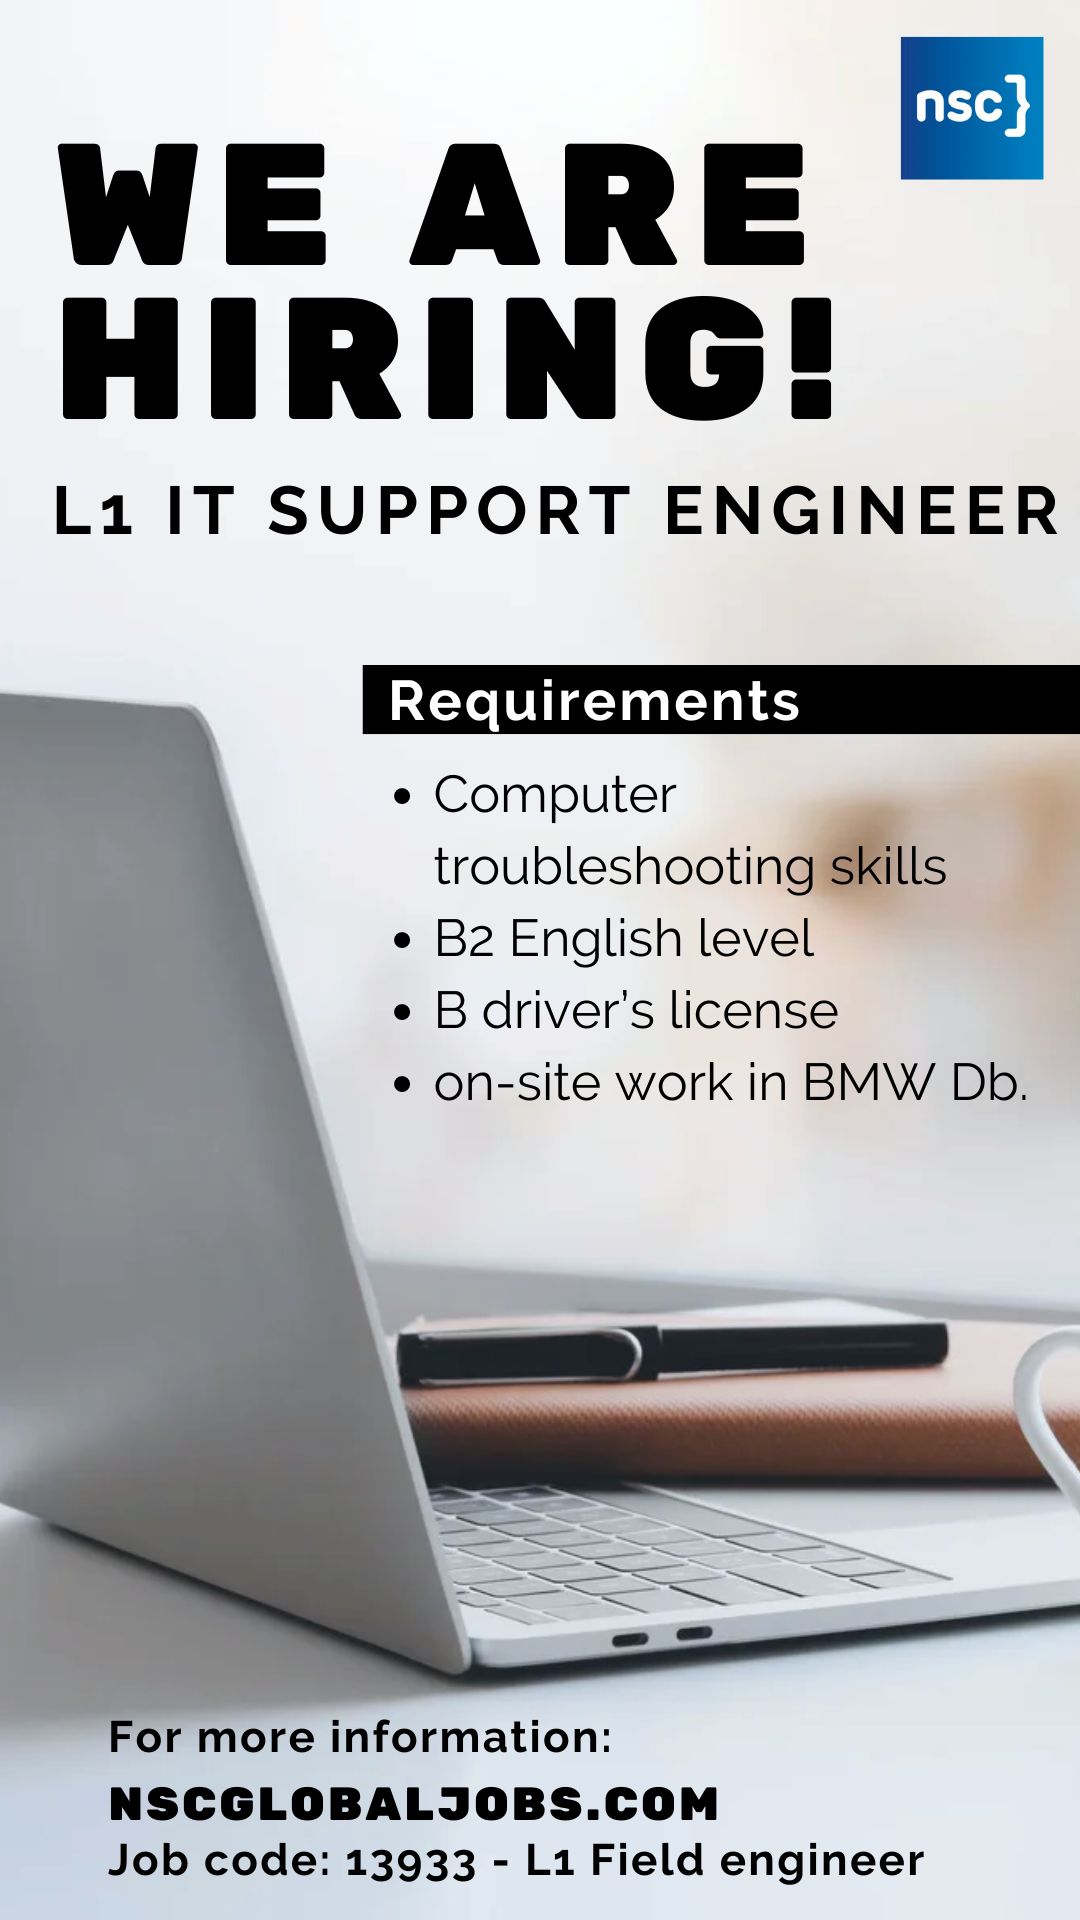 L1 Field engineer job ad post